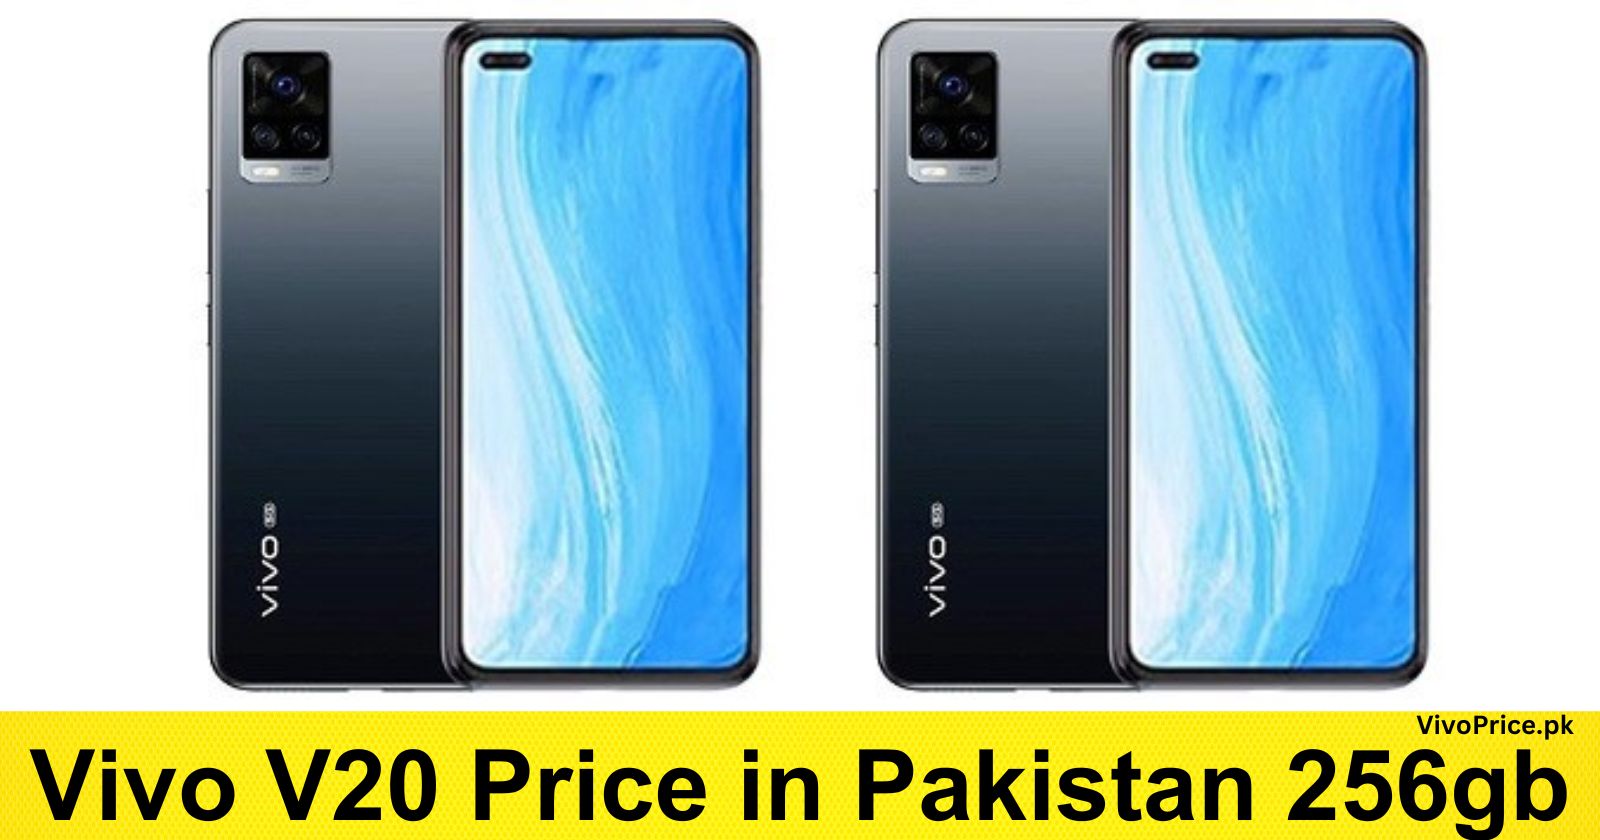 Vivo V20 Price in Pakistan 256gb | VivoPrice.pk